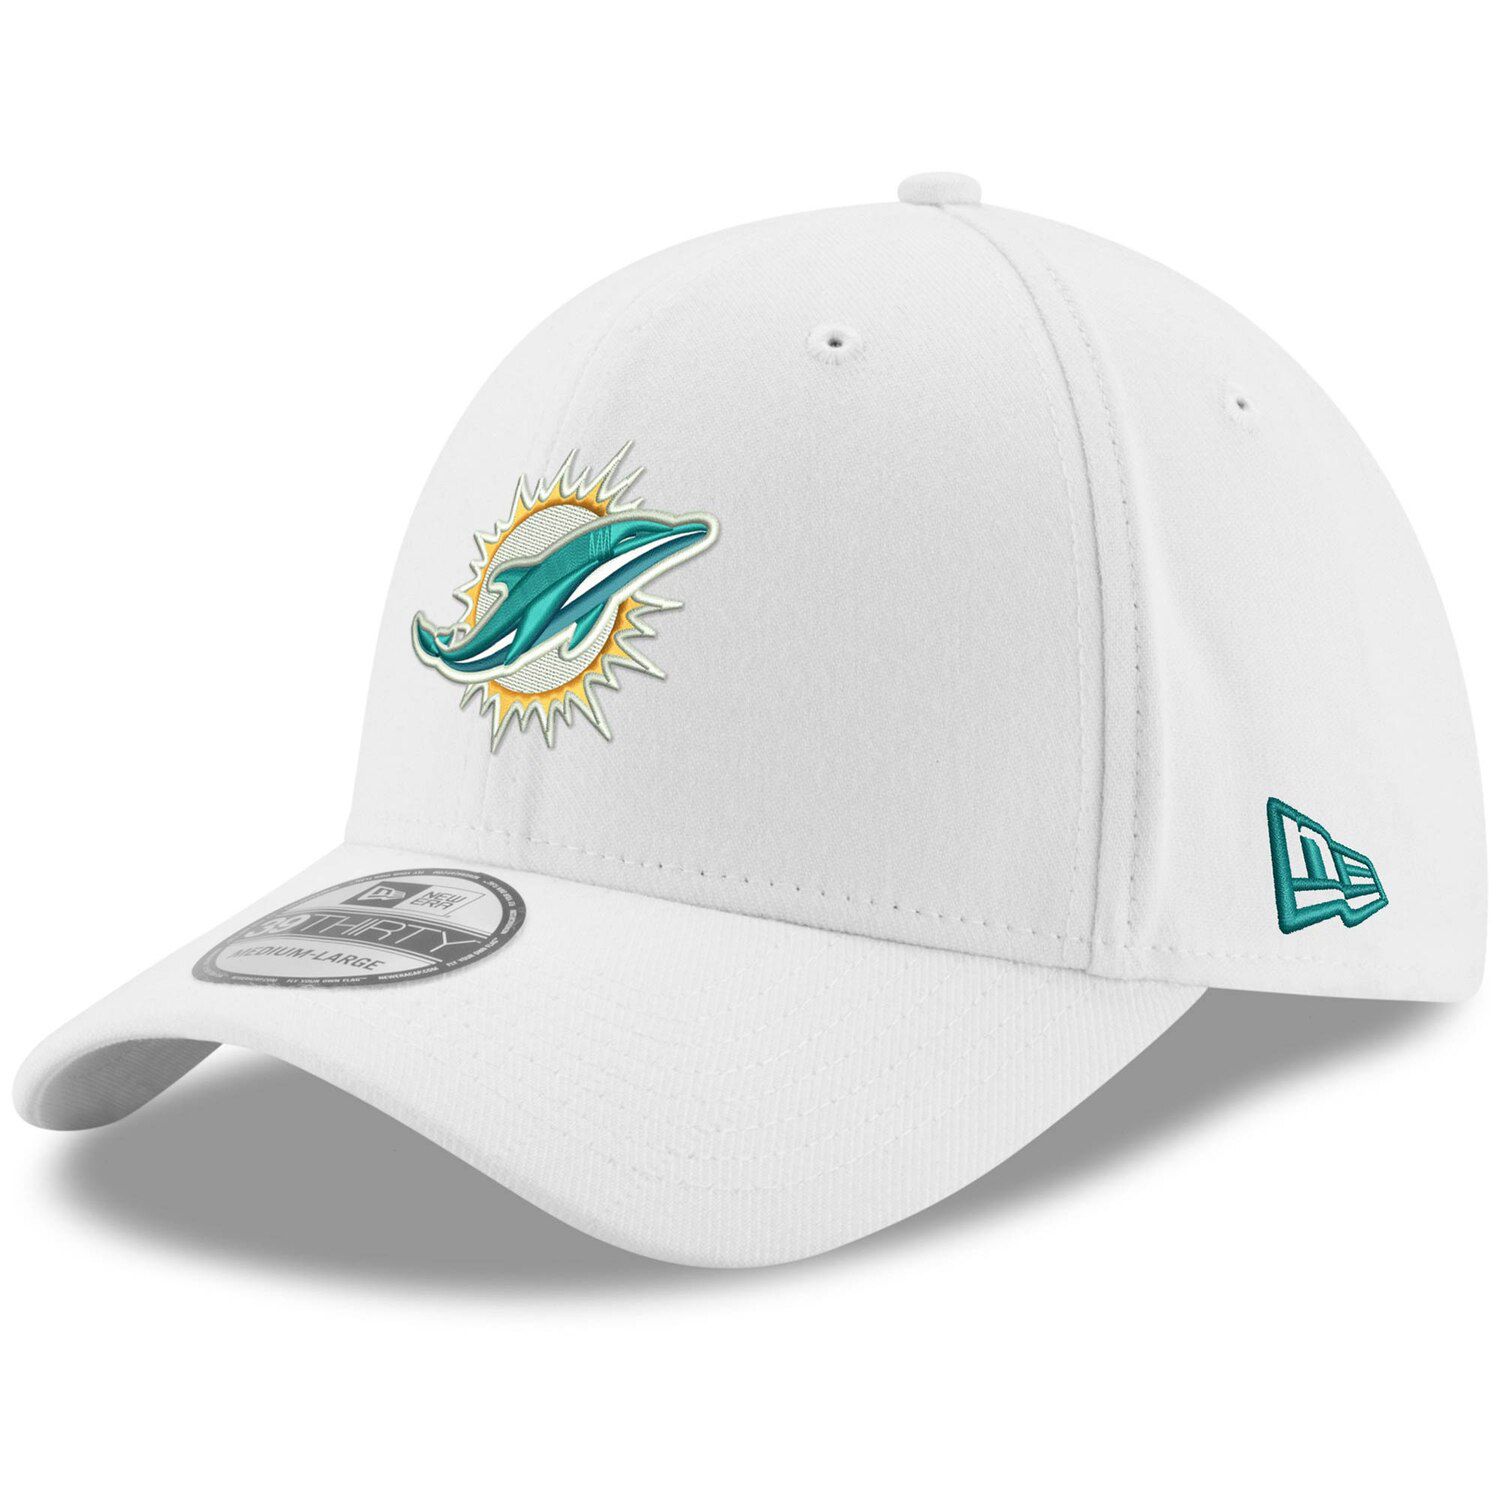 white miami dolphins hat